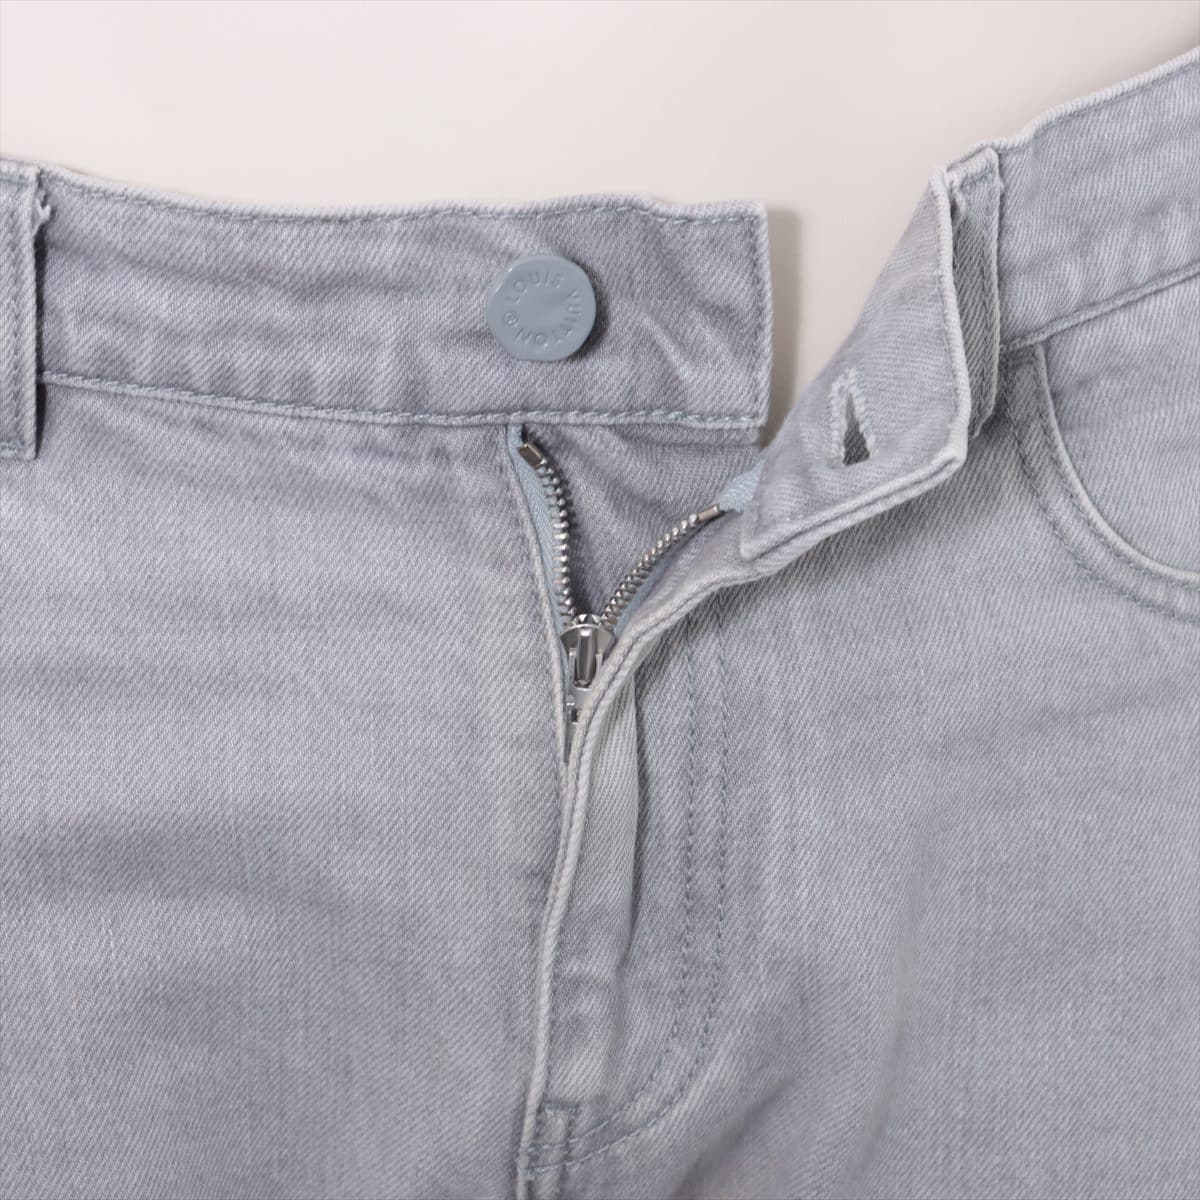 Louis Vuitton Cotton Denim pants 30 Men's Grey